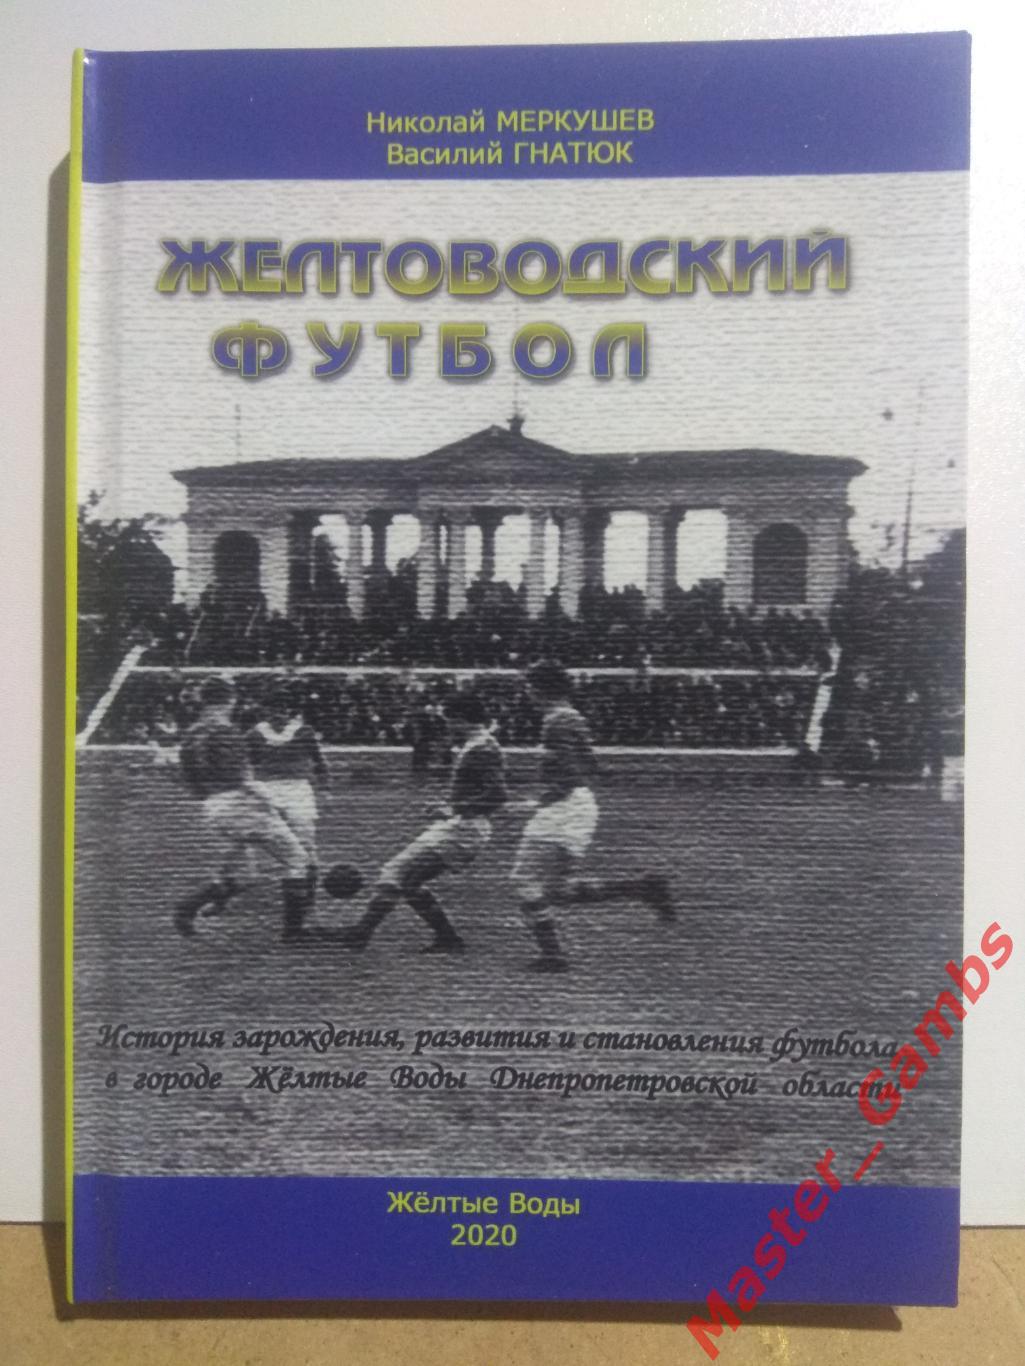 Меркушев, Гнатюк - Желтоводский футбол (2-е издание) Жёлтые Воды 2020*